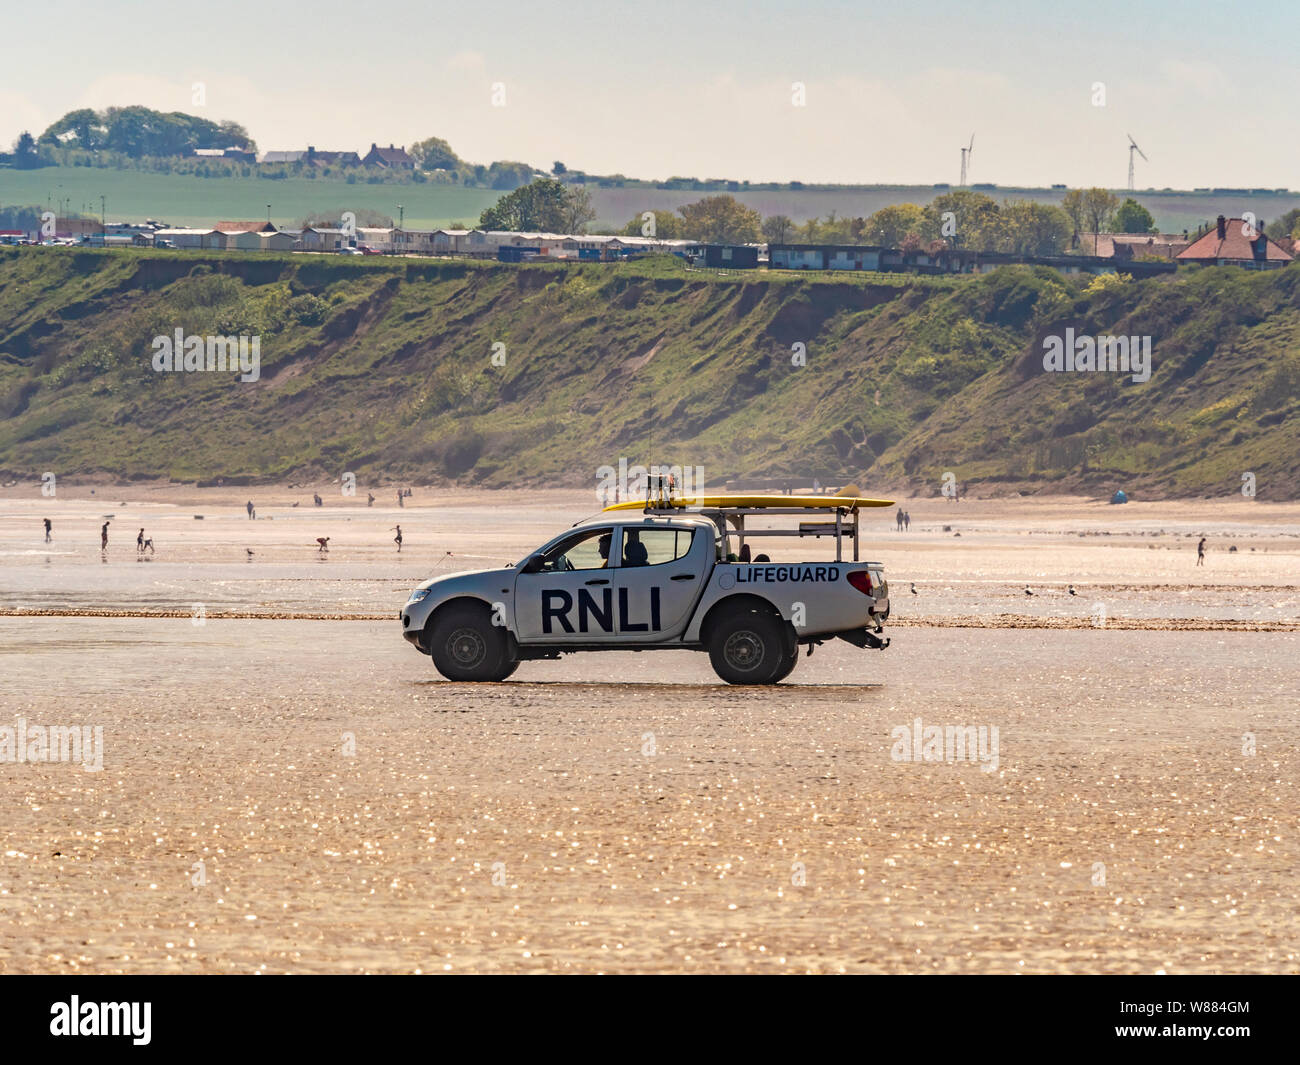 Pattuglia RNLI veicolo sulla spiaggia a Filey, North Yorkshire, Regno Unito. Foto Stock